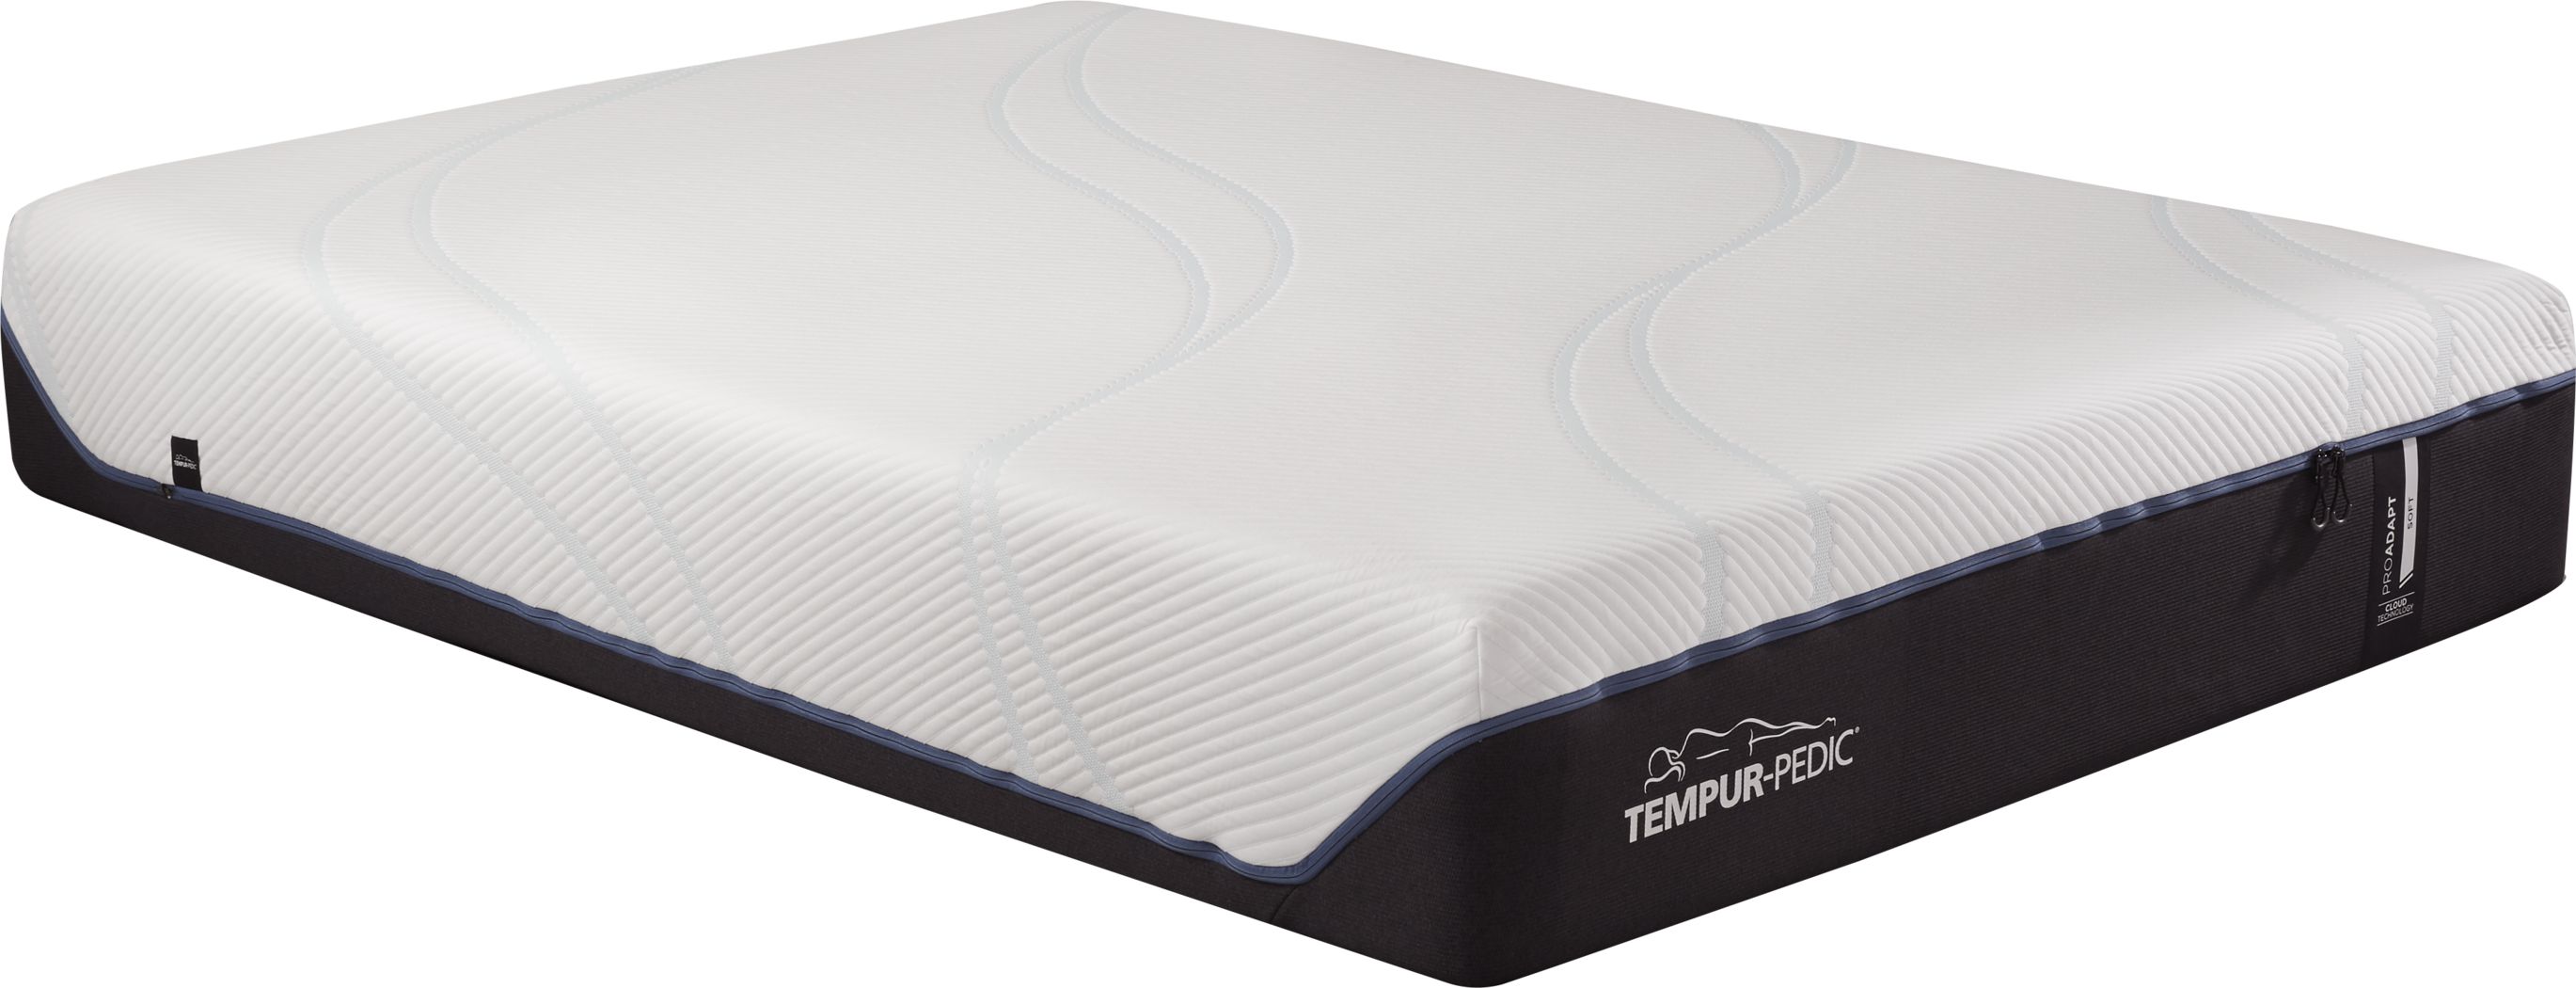 tempur king mattress dimensions